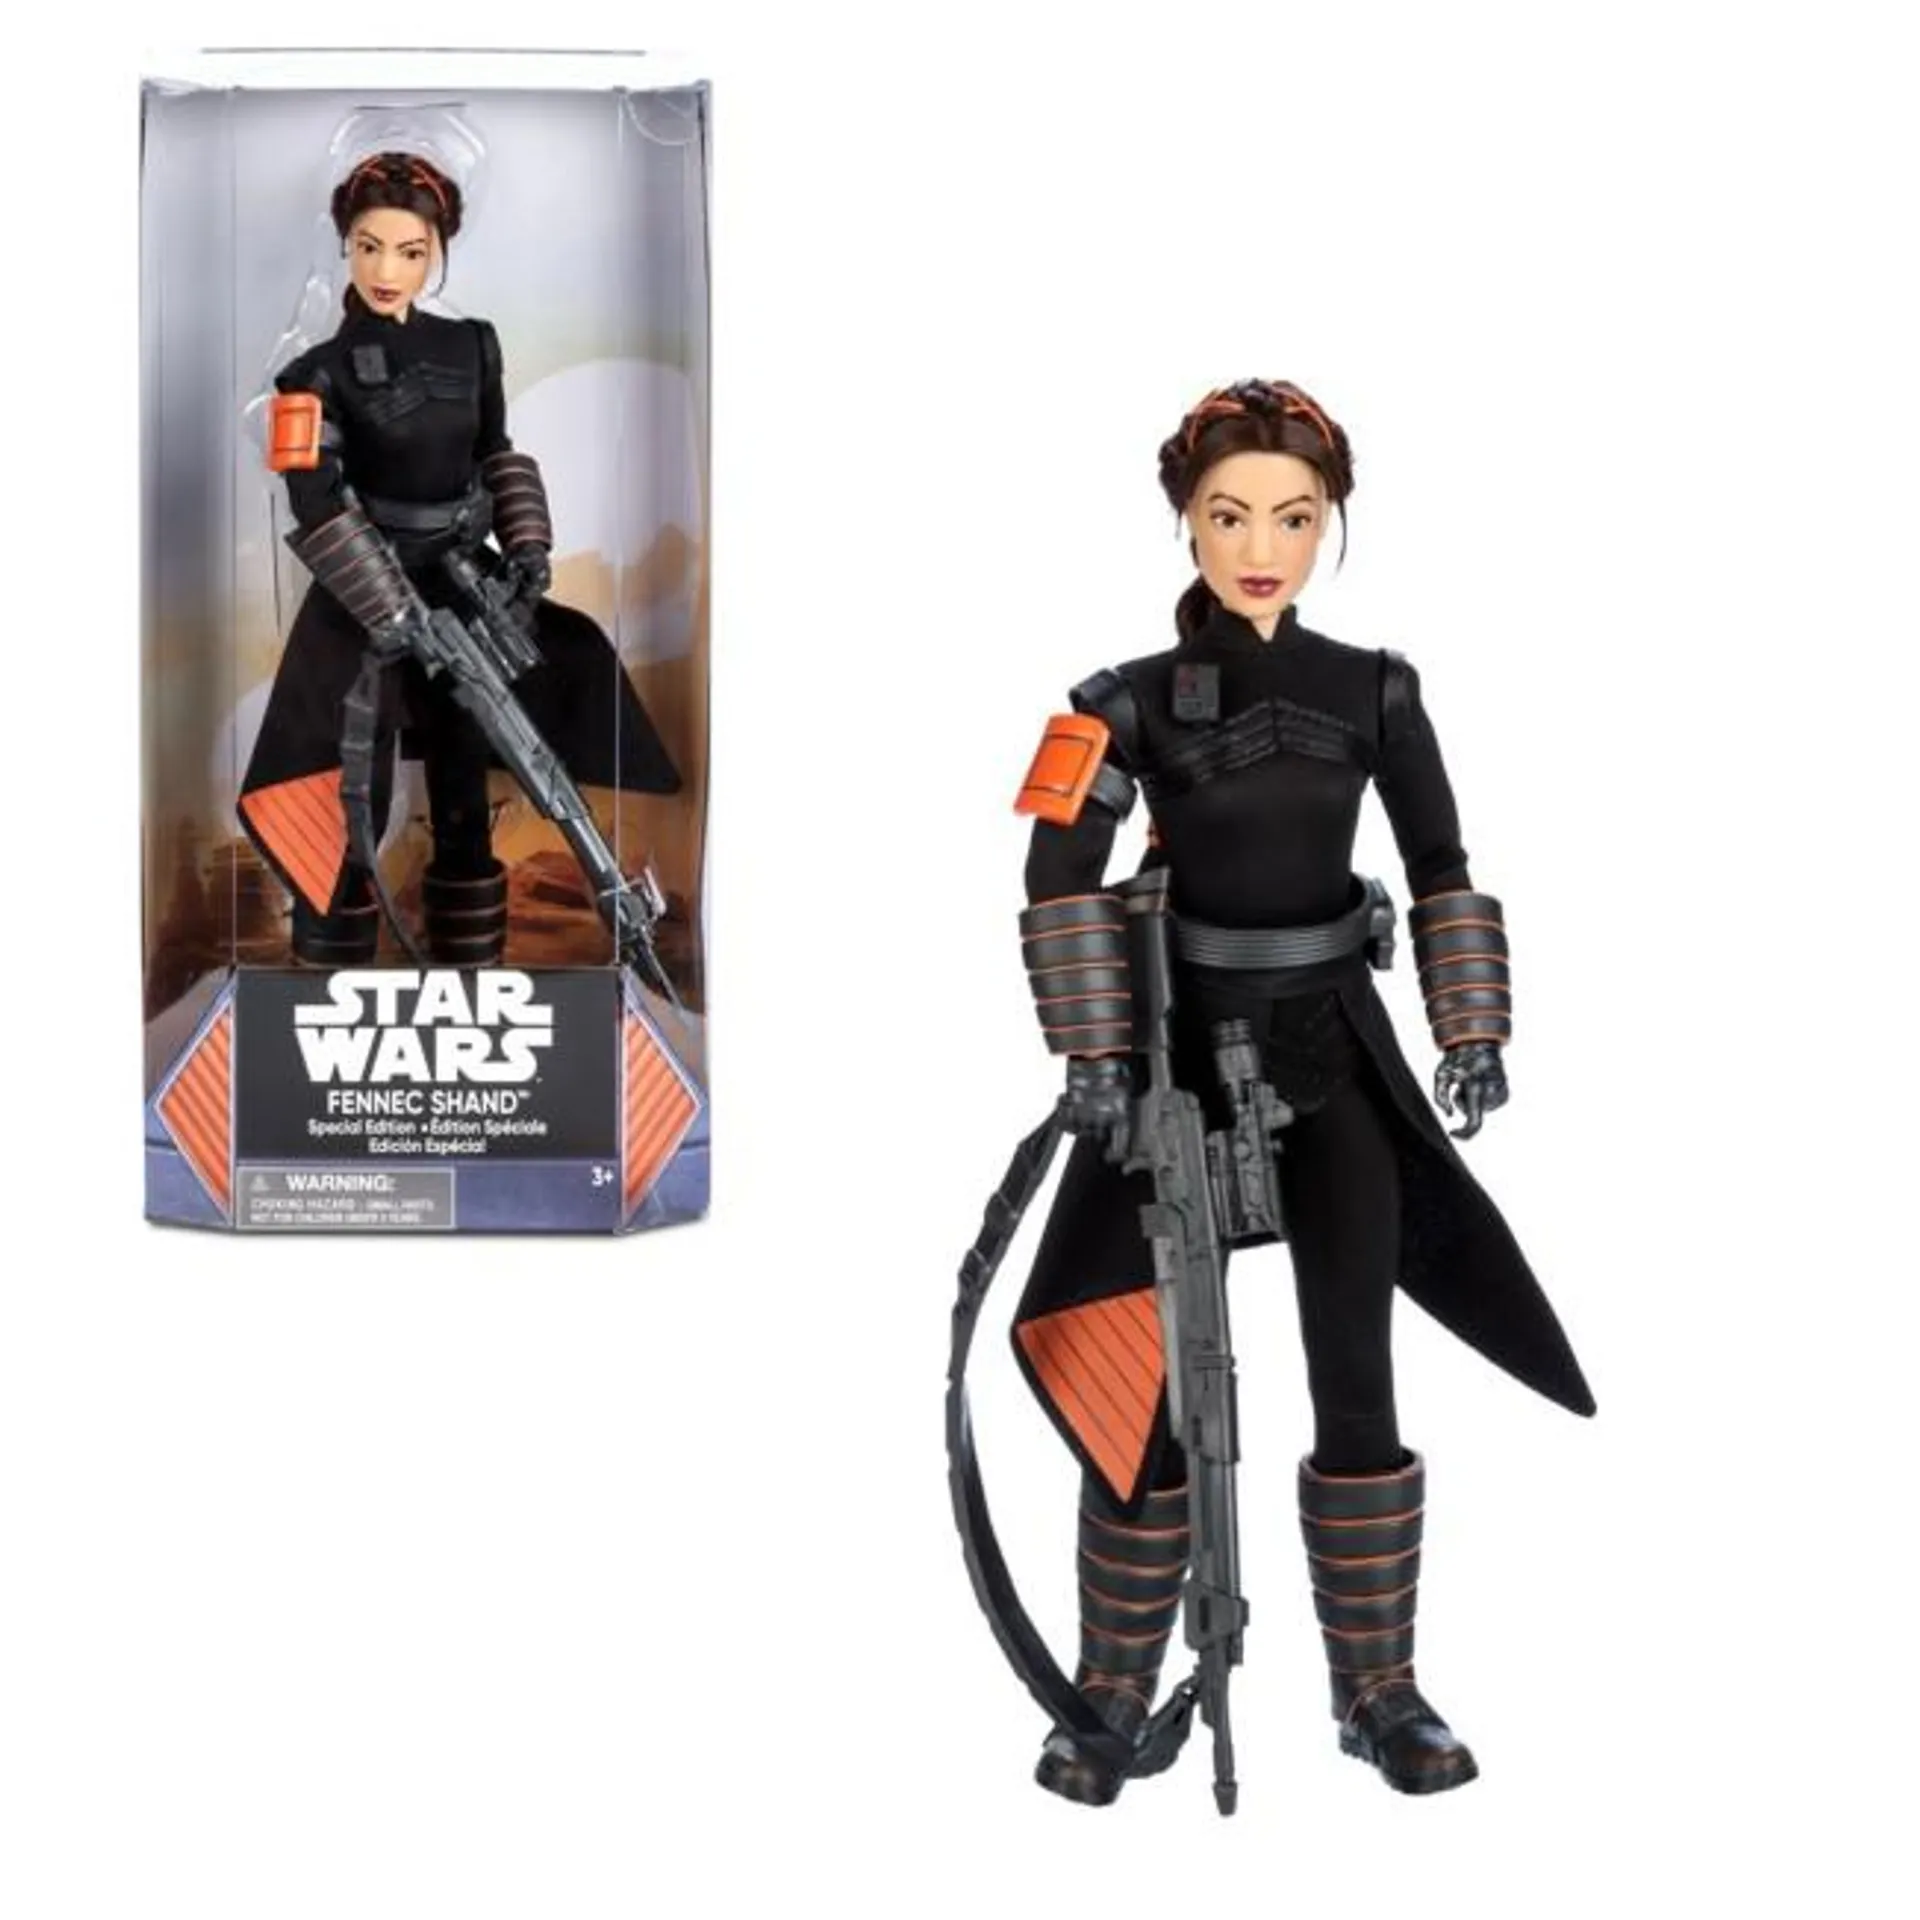 Fennec Shand Special Edition Doll, Star Wars